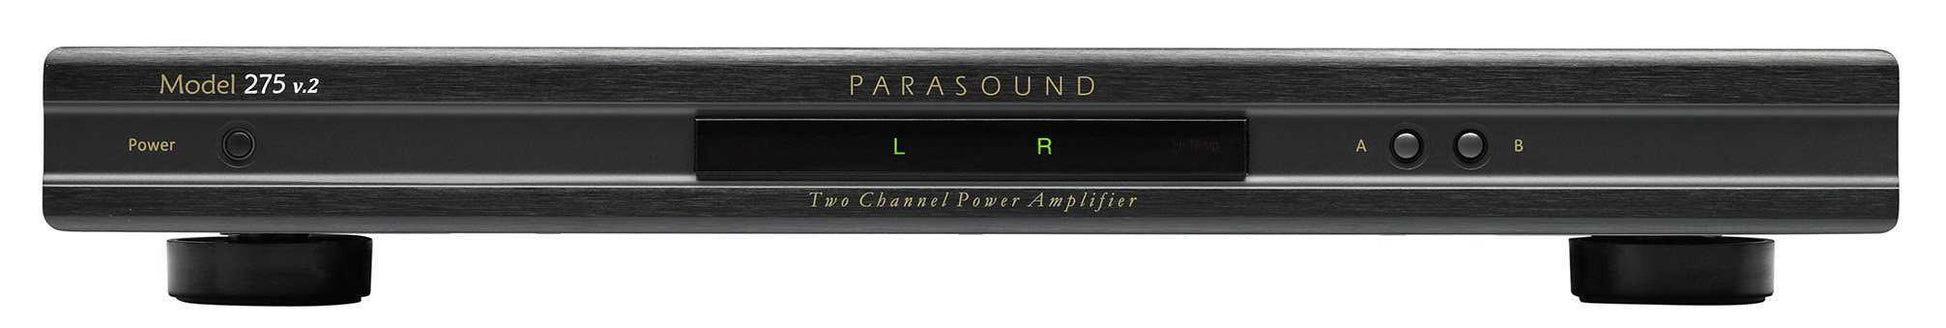 Parasound 275 v.2 - 2 Kanal Verstärker (8527773696348)